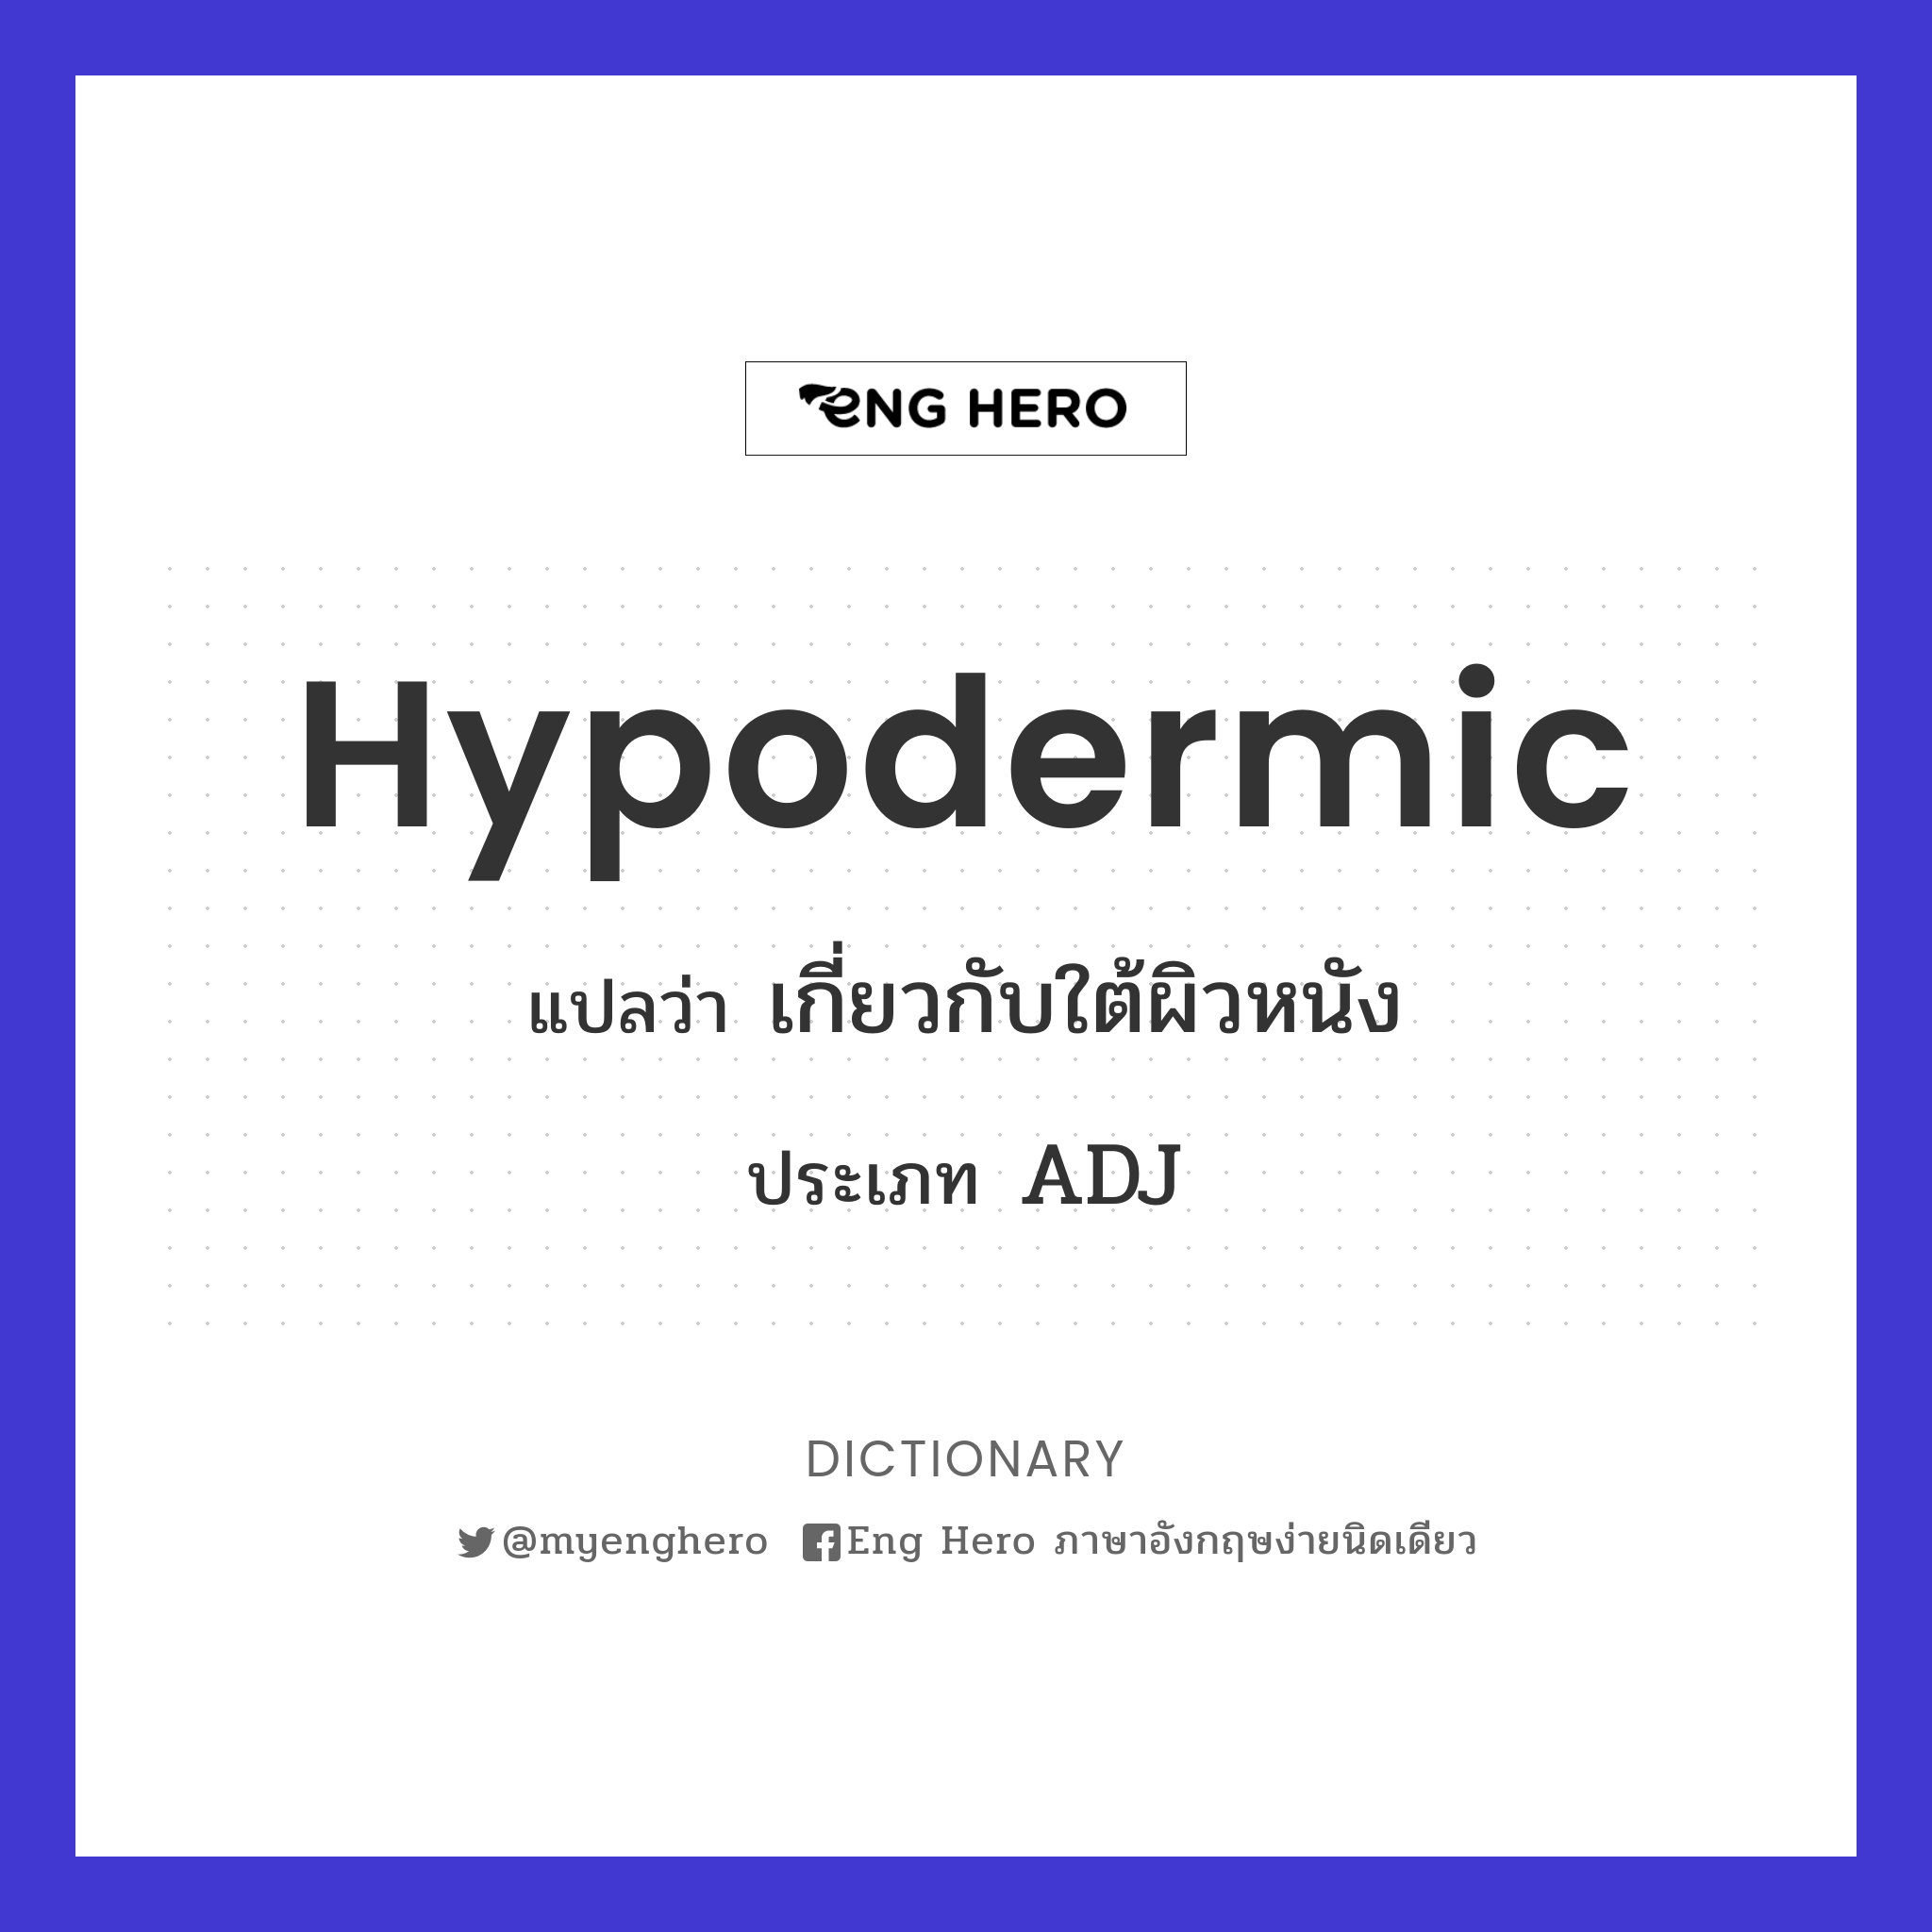 hypodermic